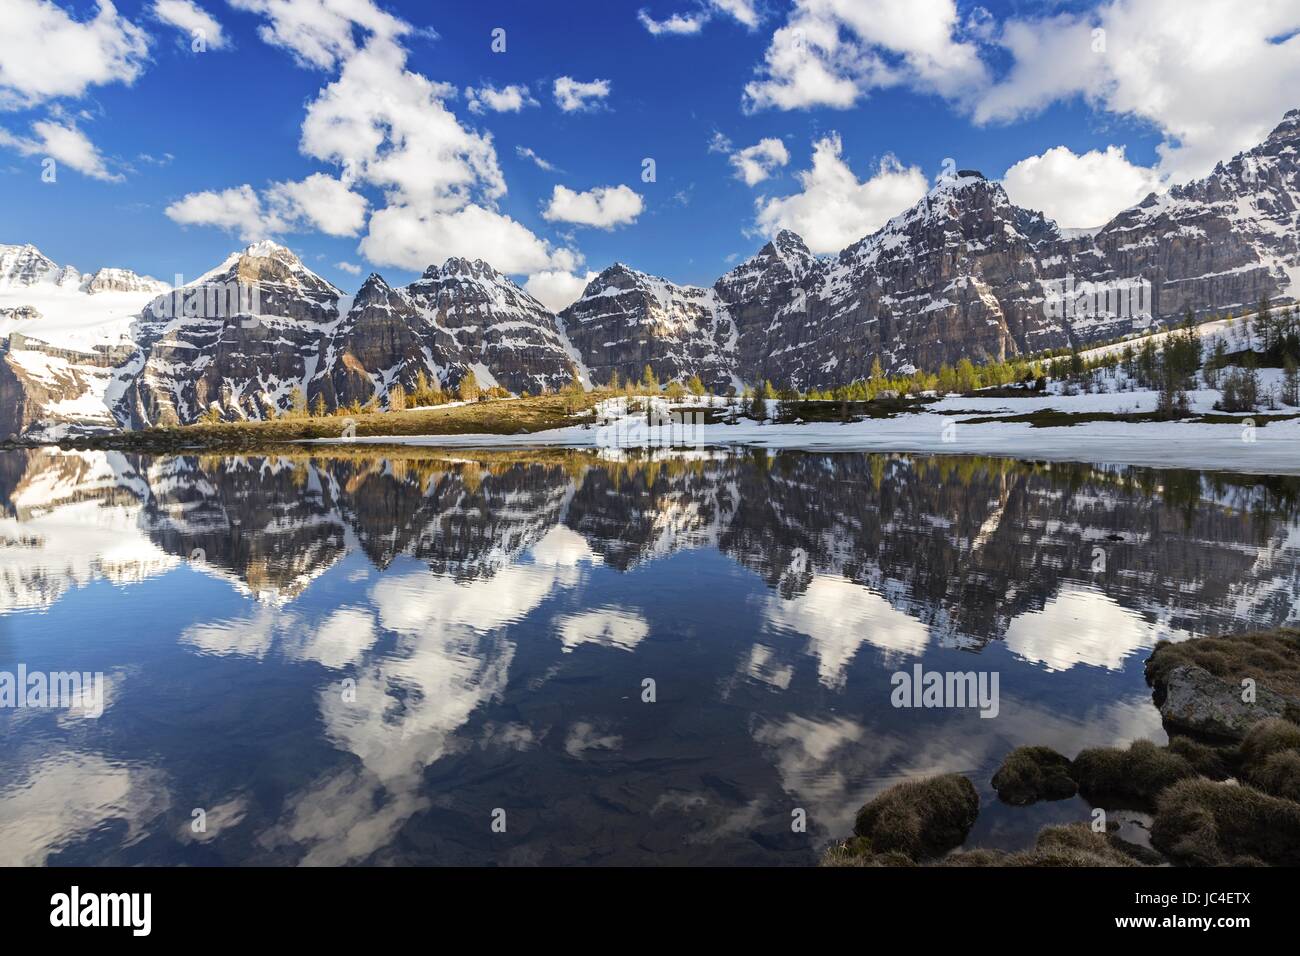 Vallée des dix pics Paysage avec des montagnes reflétées dans les eaux calmes du lac Minnestimma dans la vallée Larch, parc national Banff Rocheuses canadiennes Banque D'Images